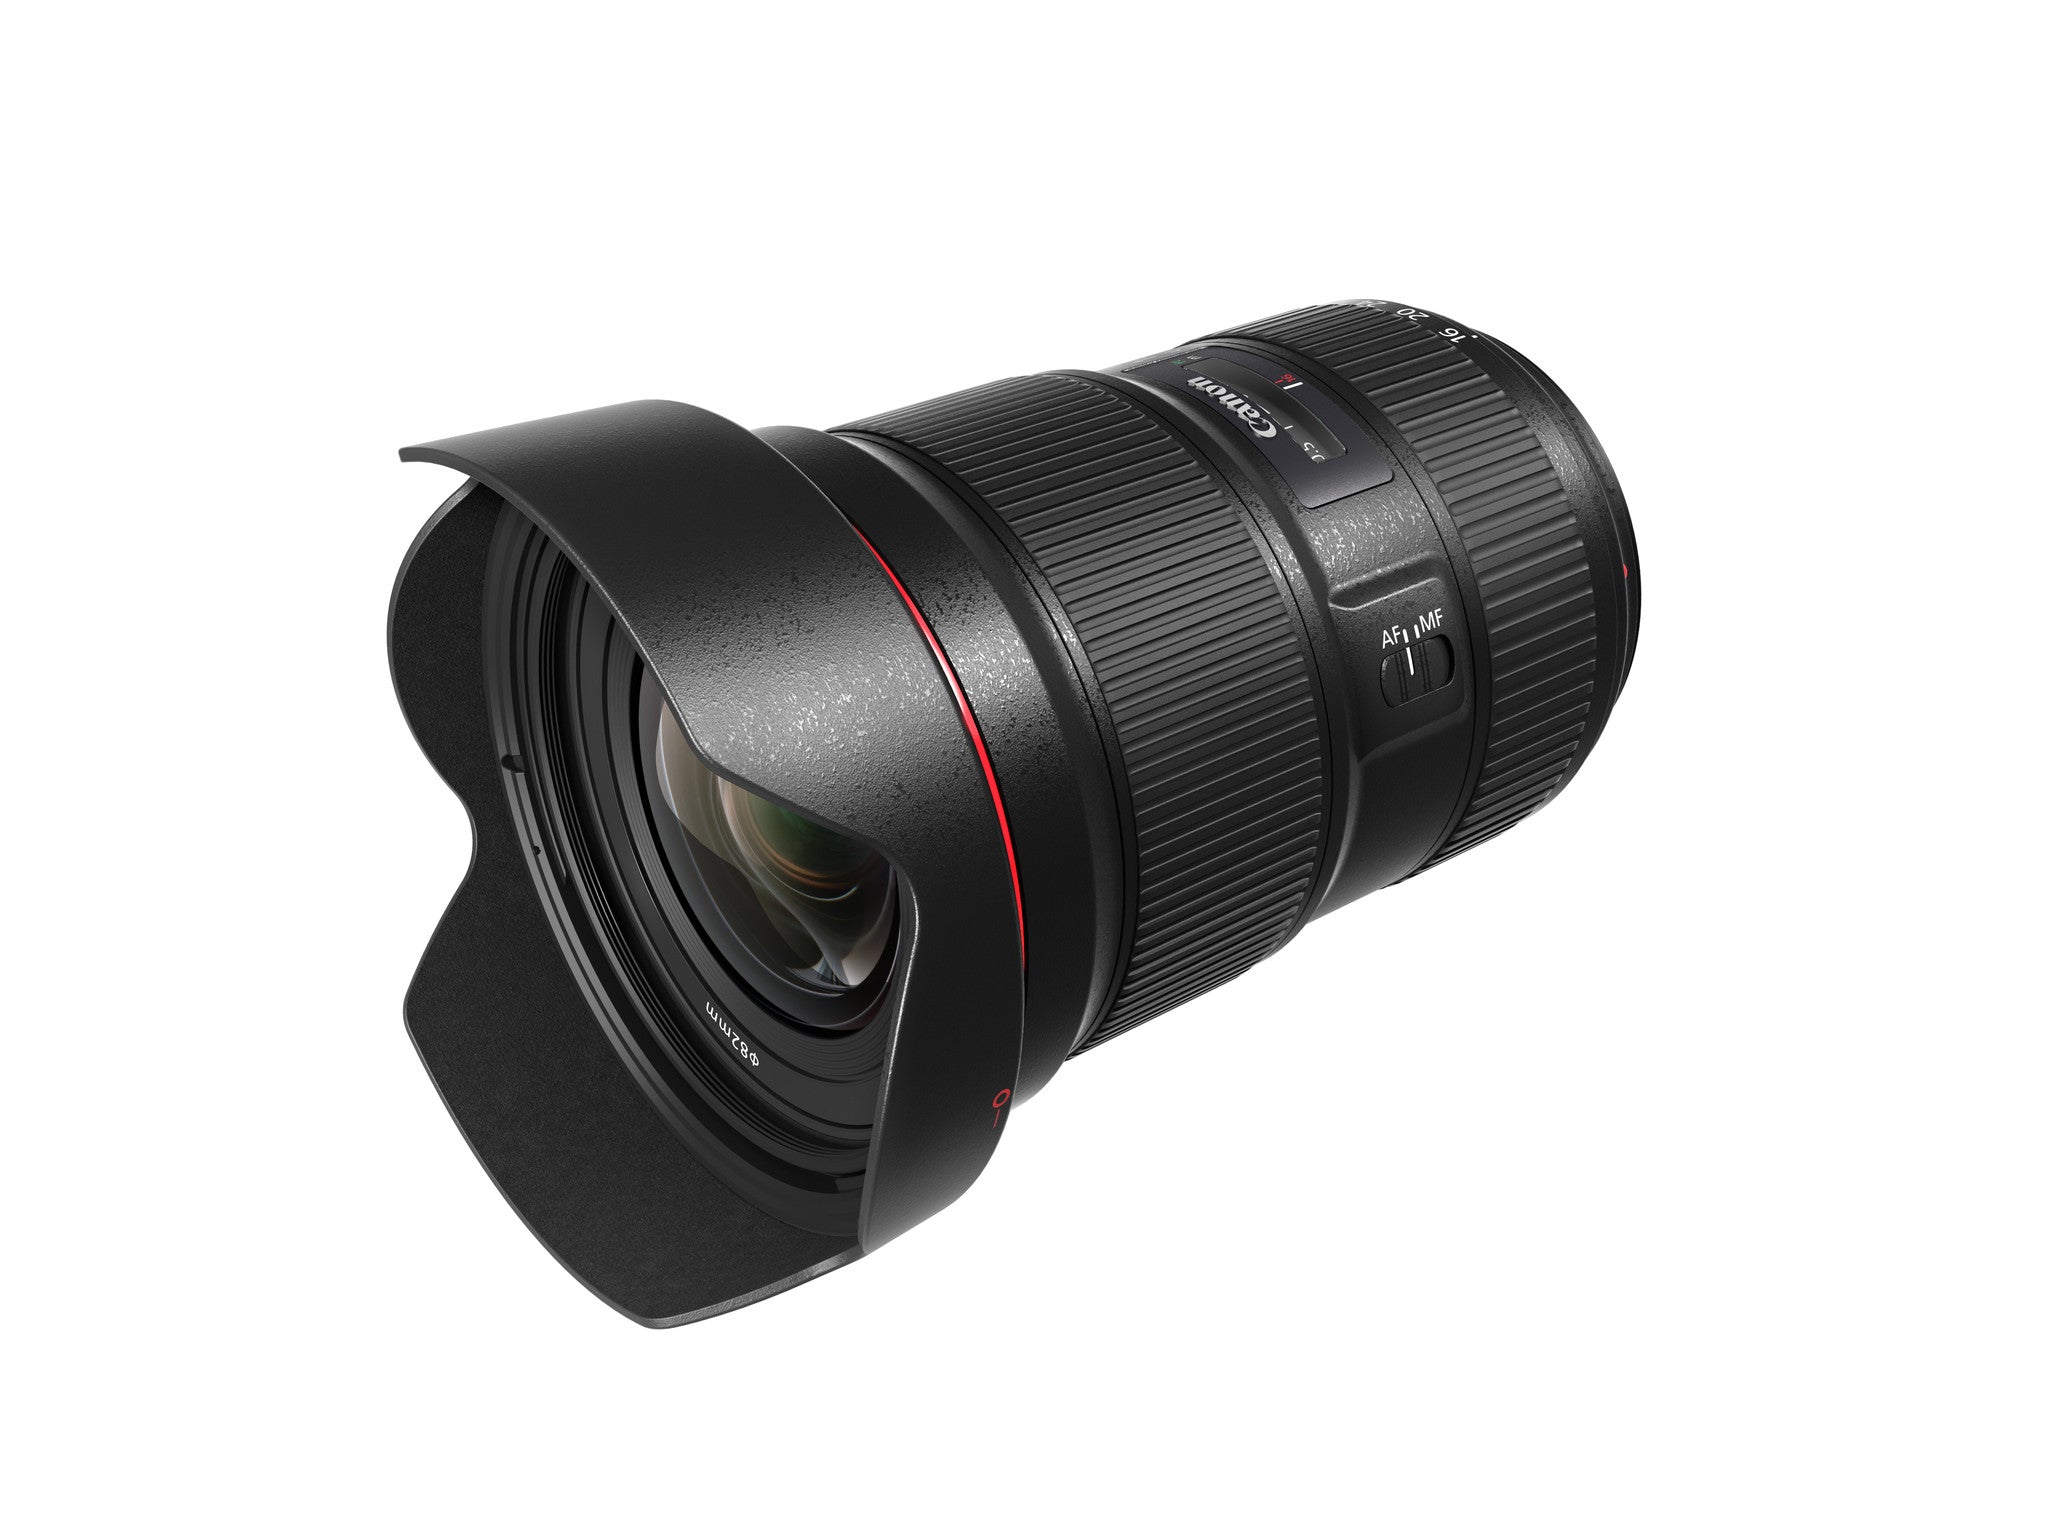 Canon EF 16-35mm f/2.8L III USM Lens, lenses slr lenses, Canon - Pictureline  - 2